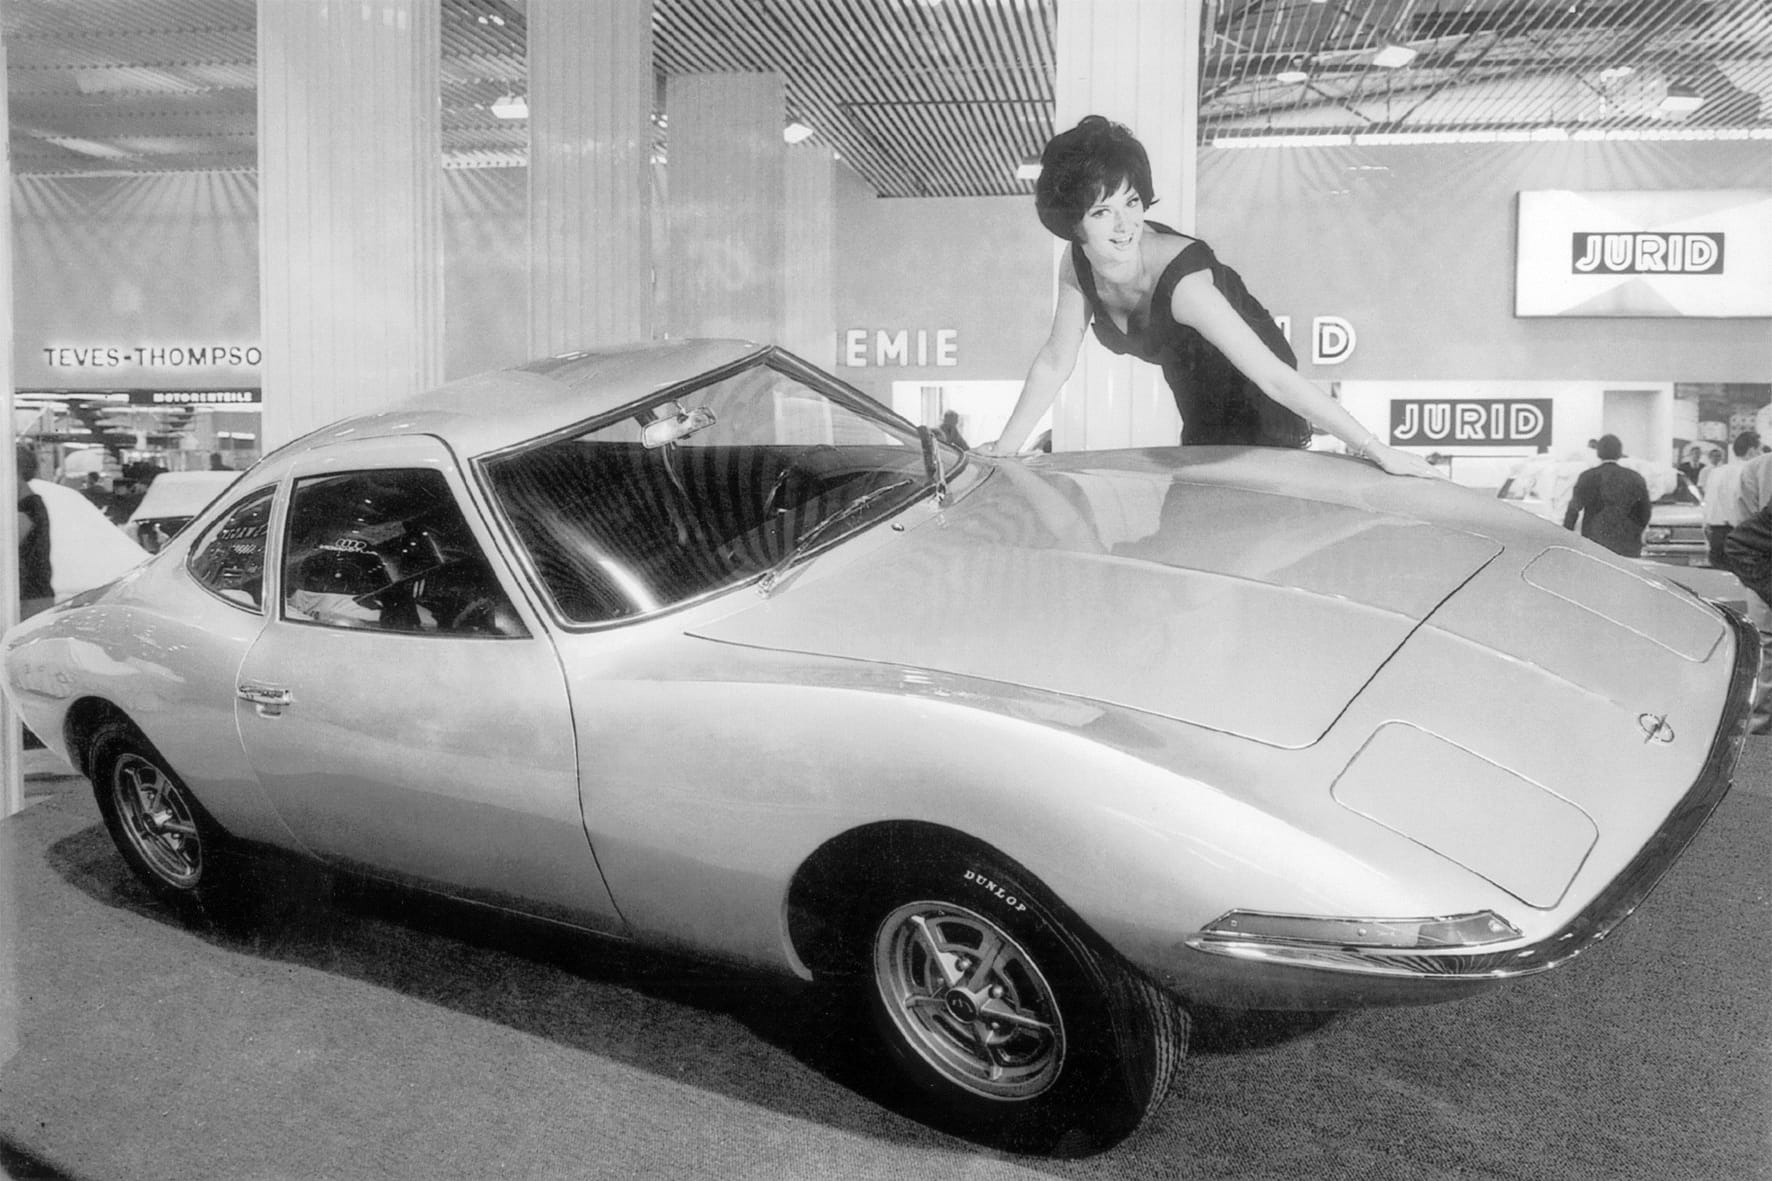 Das Vorbild stammt aus dem Jahr 1965: "Der Experimental GT war damals Avantgarde und der GT Concept ist es heute wieder - absolut klar, minimalistisch, dabei spannend und kompromisslos", so Mark Adams, Opel-Chefdesigner.